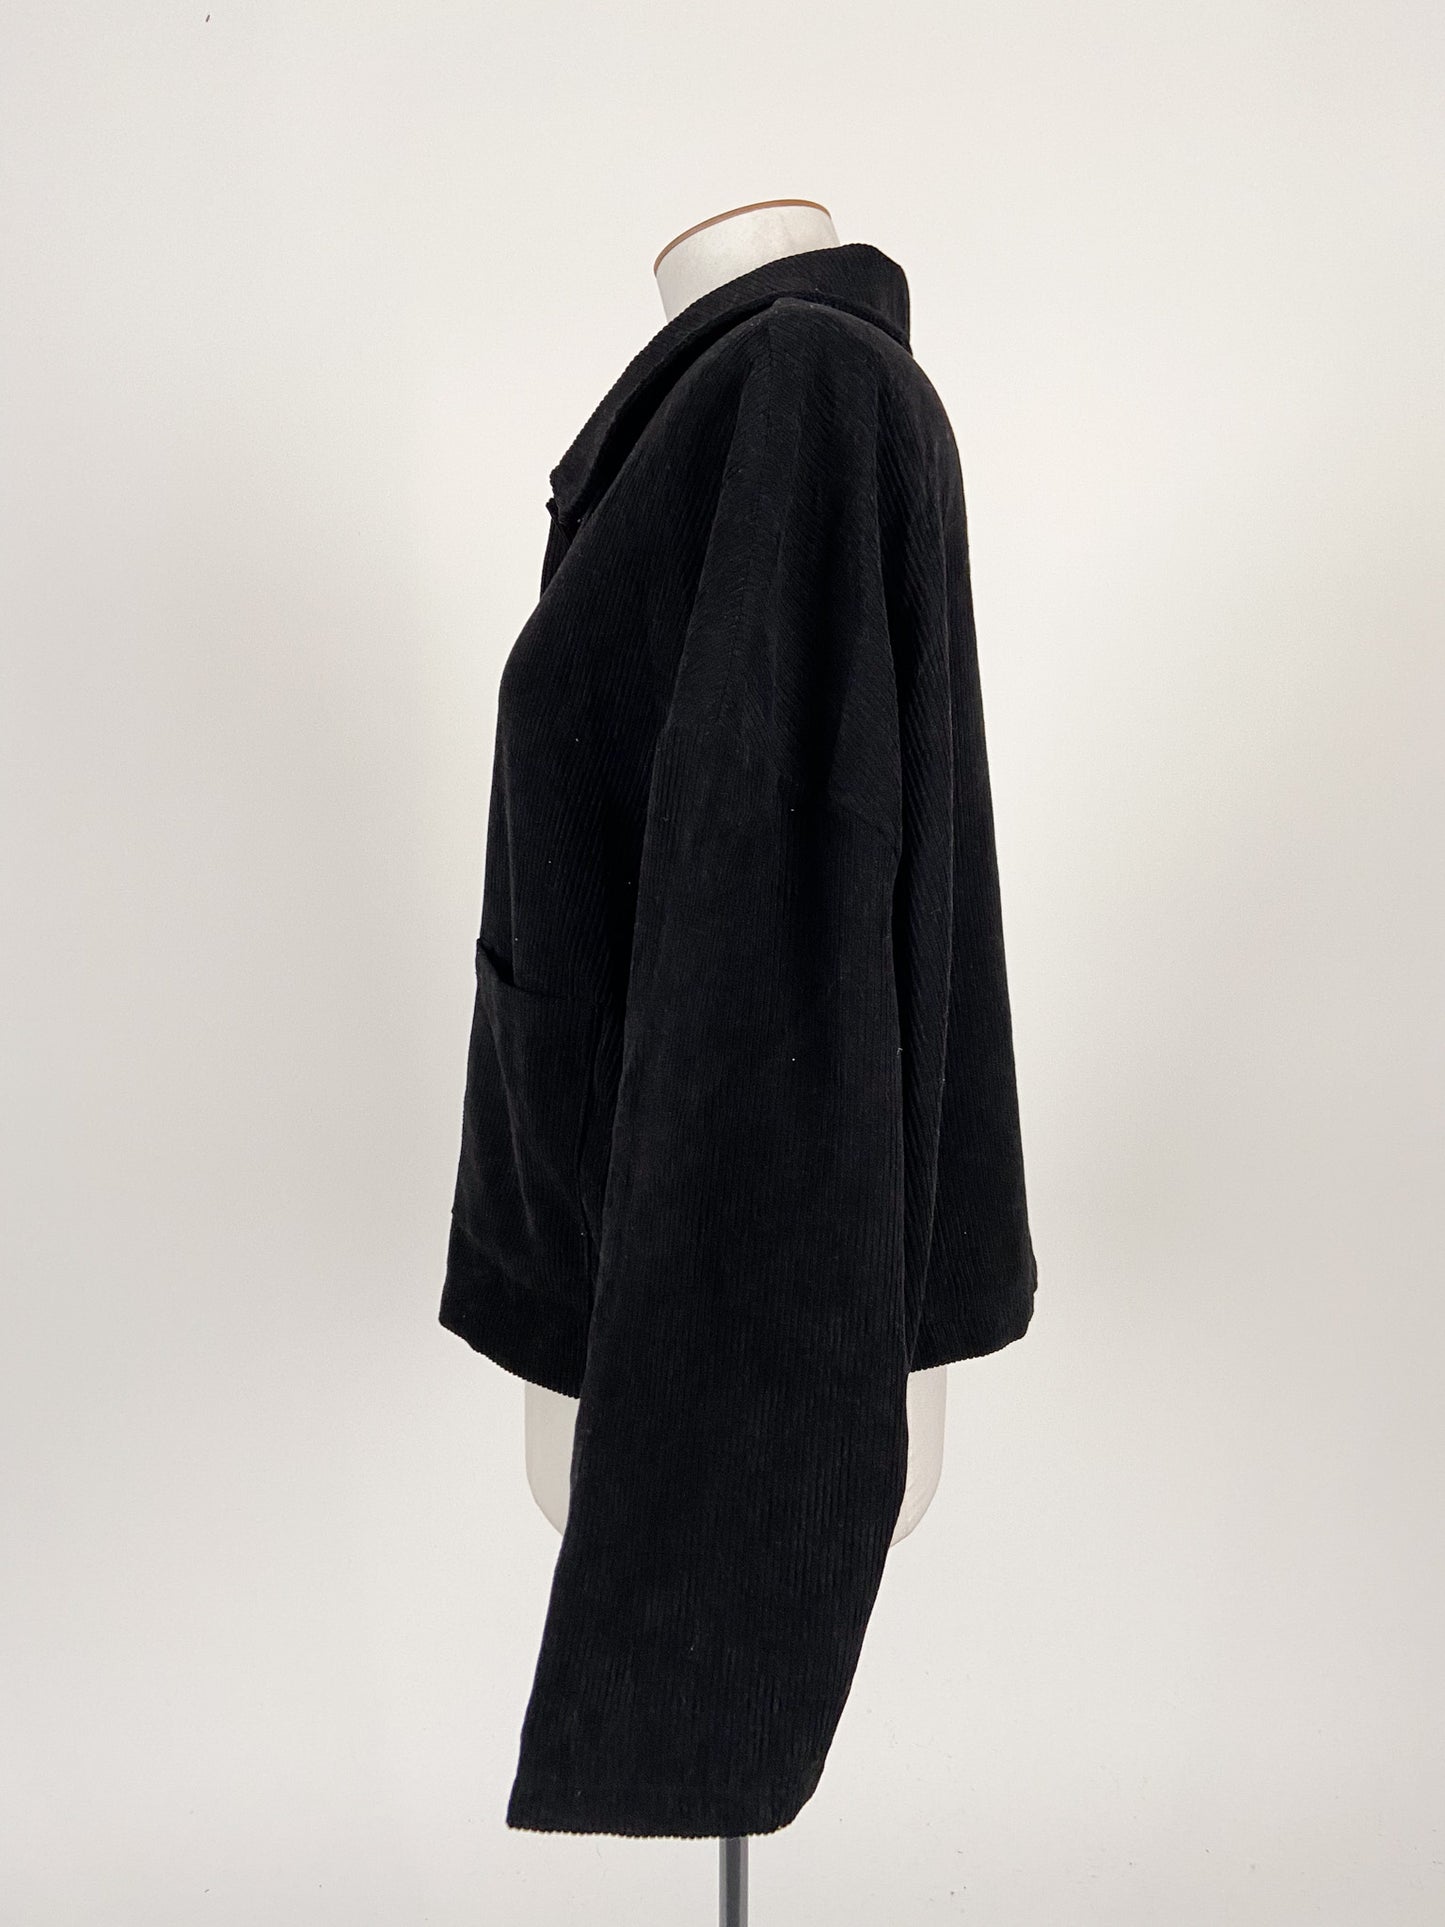 Shein | Black Casual/Workwear Jacket | Size 4XL